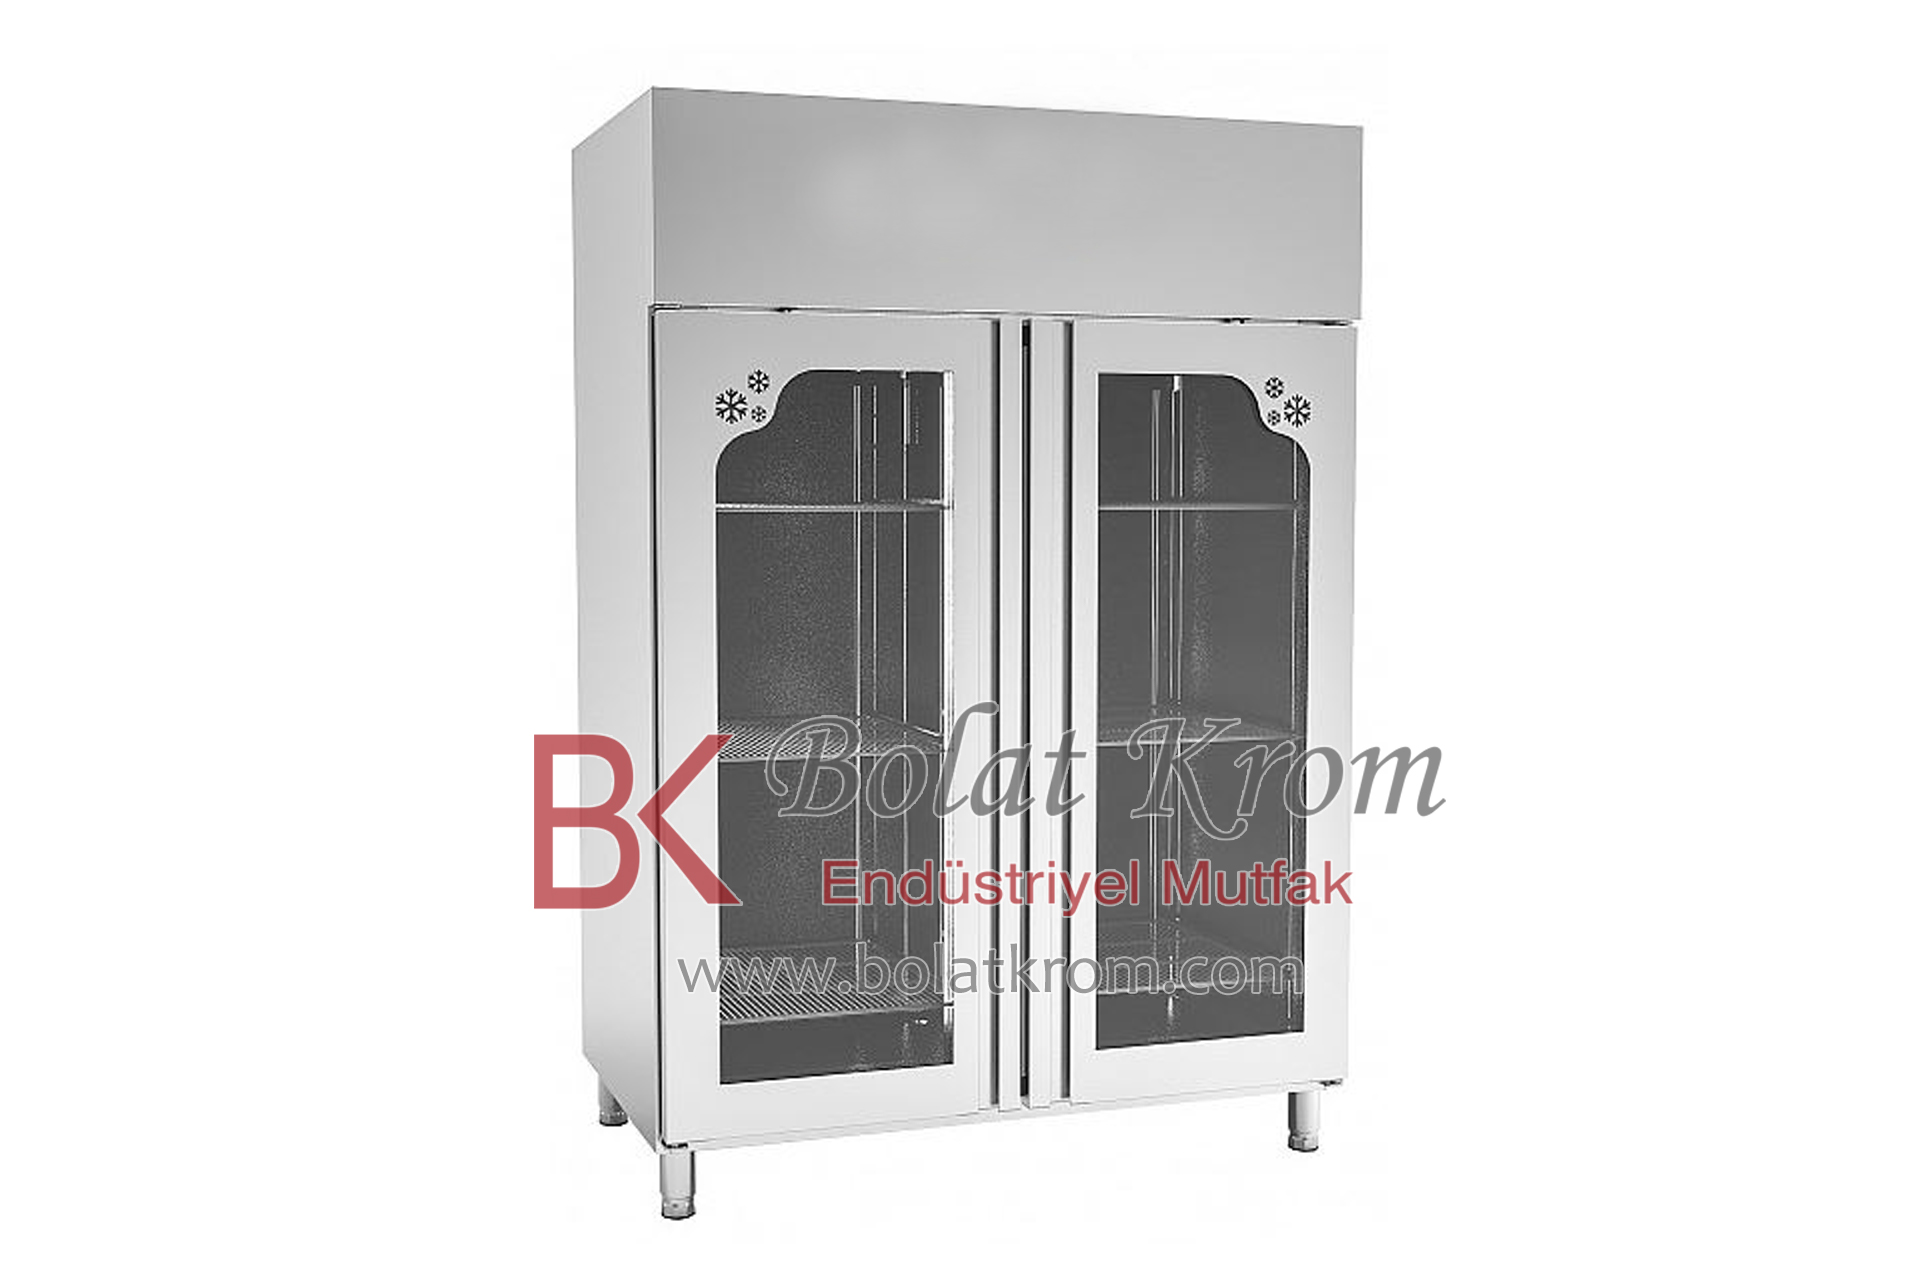 Paslanmaz Çelik Soğutma Üniteleri, Dikey Tip Çift Cam Kapaklı Buzdolabı özellikleri, ebatları ve üretimi İzmir'de Bolat Krom Endüstriyel Mutfak Ekipmanları tarafından üretilmektedir.